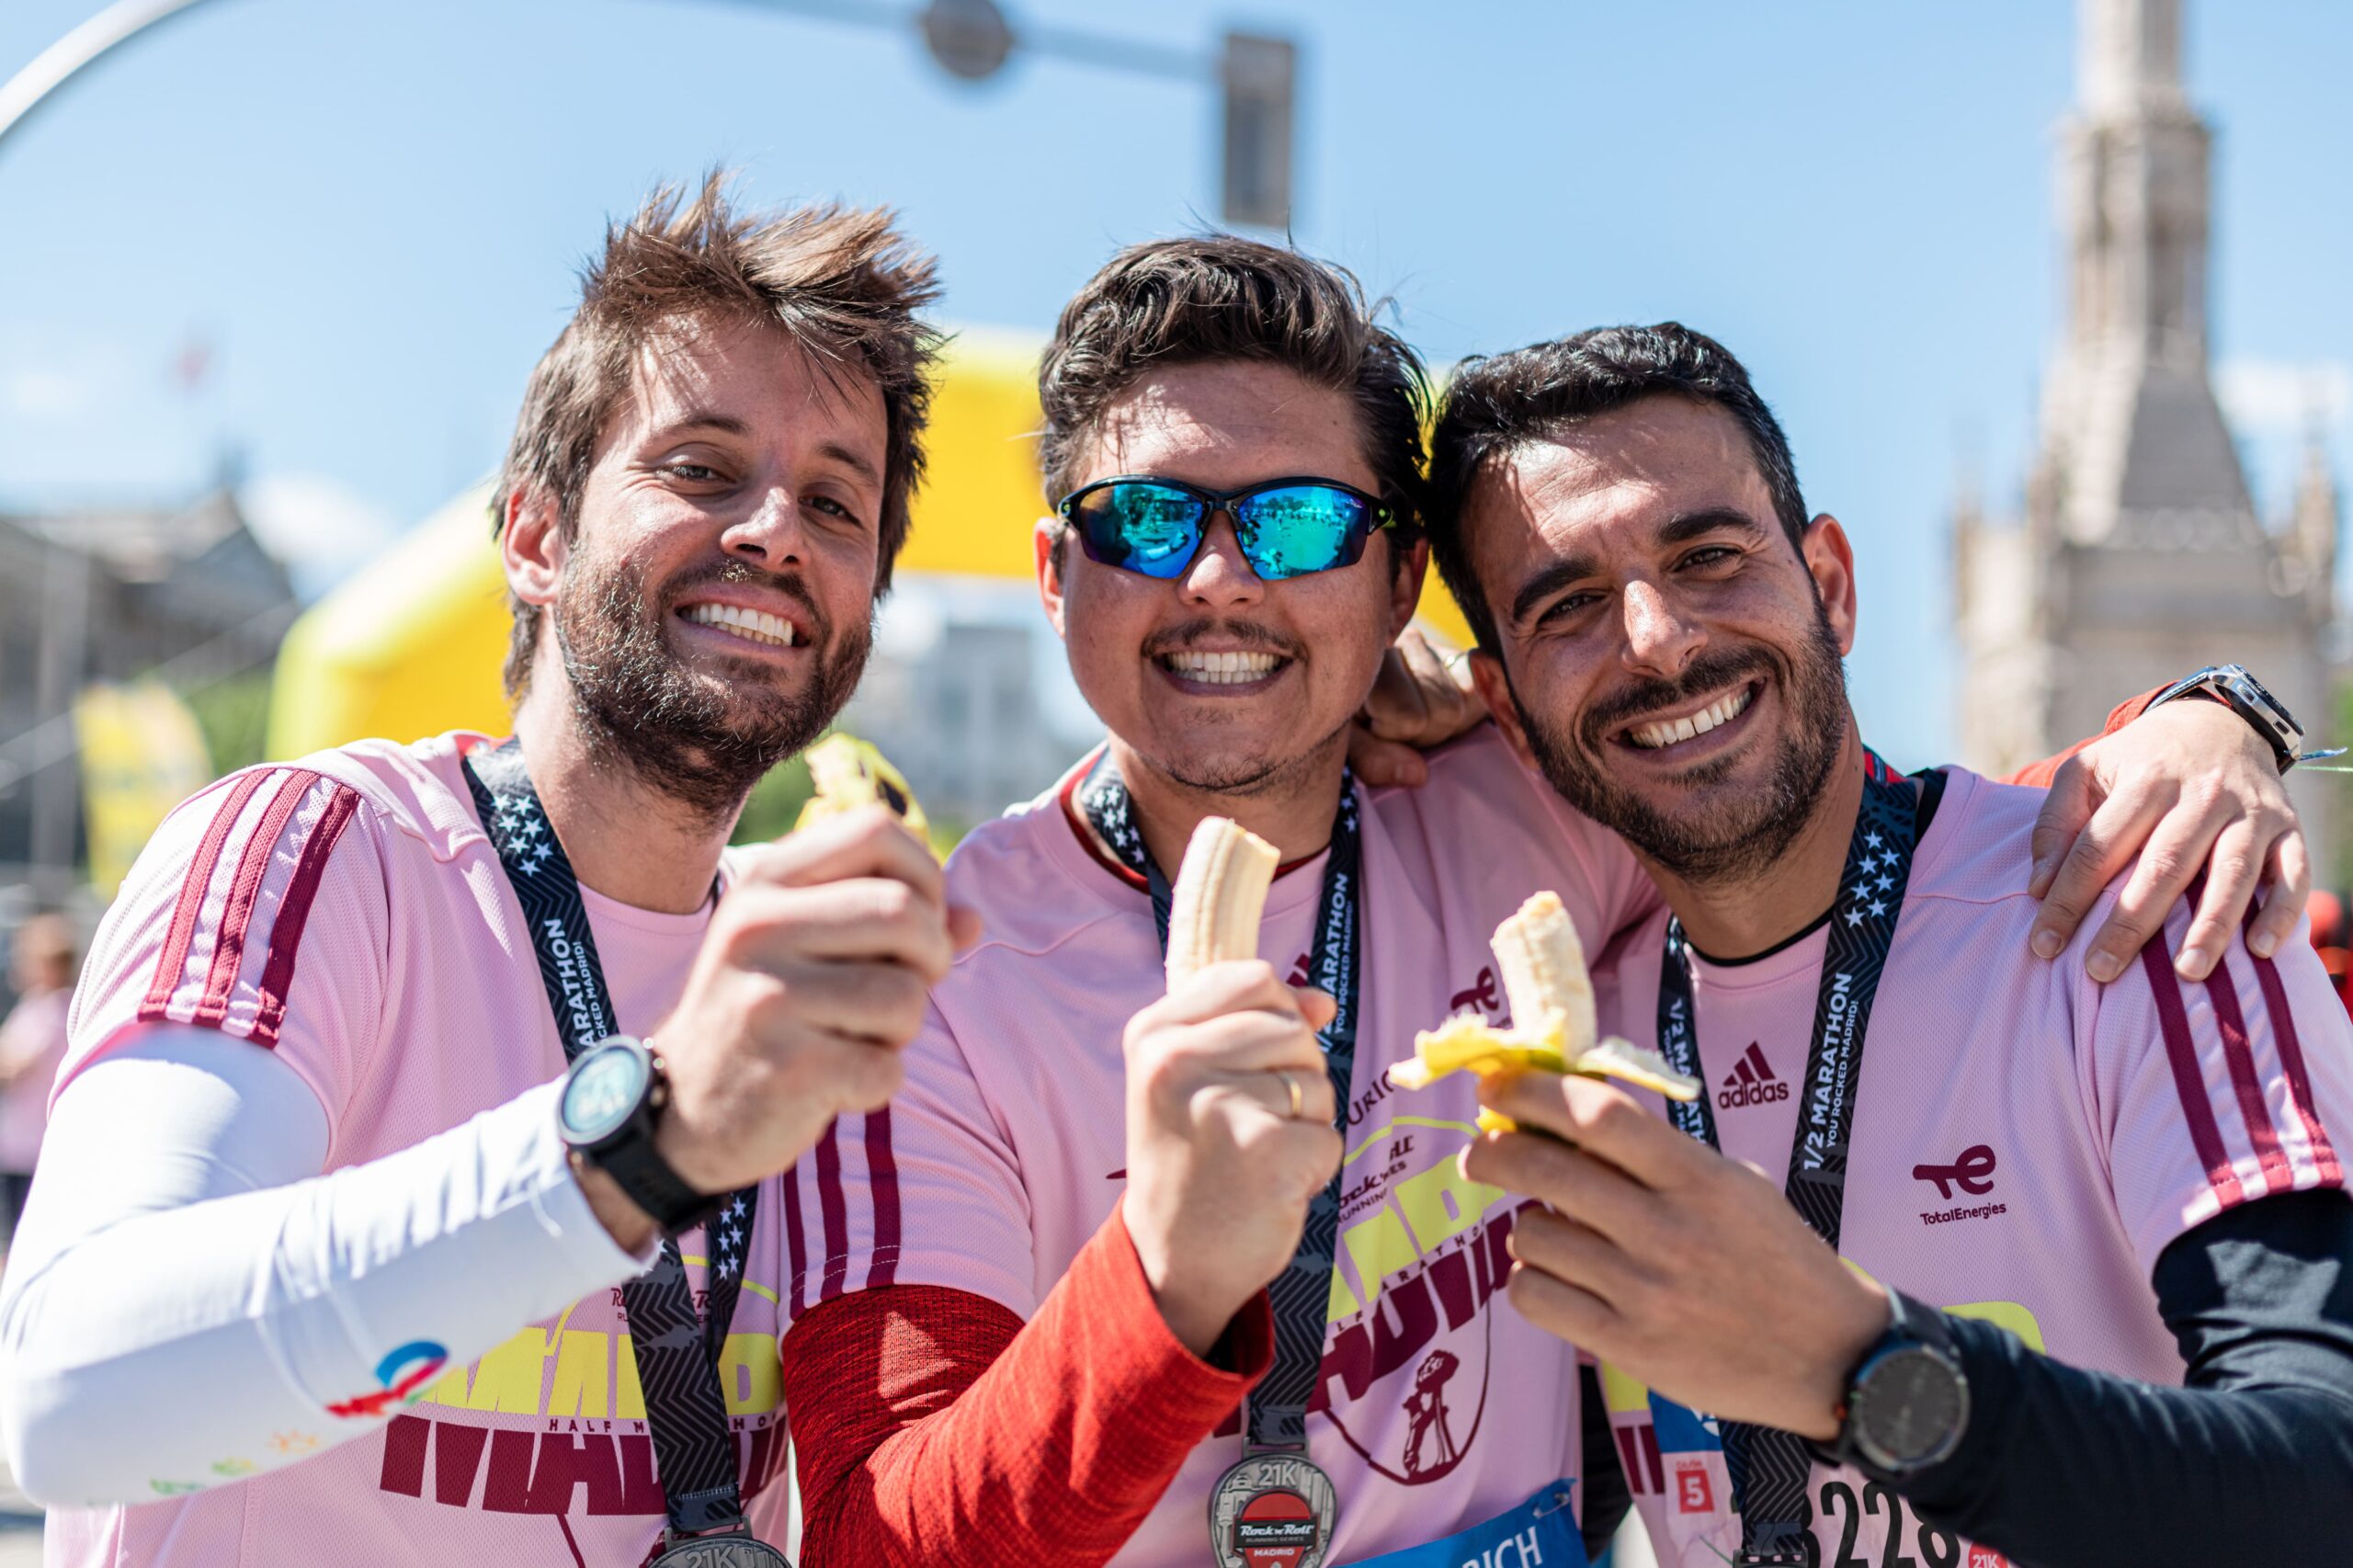 El Circuito Nacional de Running Plátano de Canarias 2023 llega a su ecuador en la Zurich Rock ‘n’ Roll Running Series Madrid